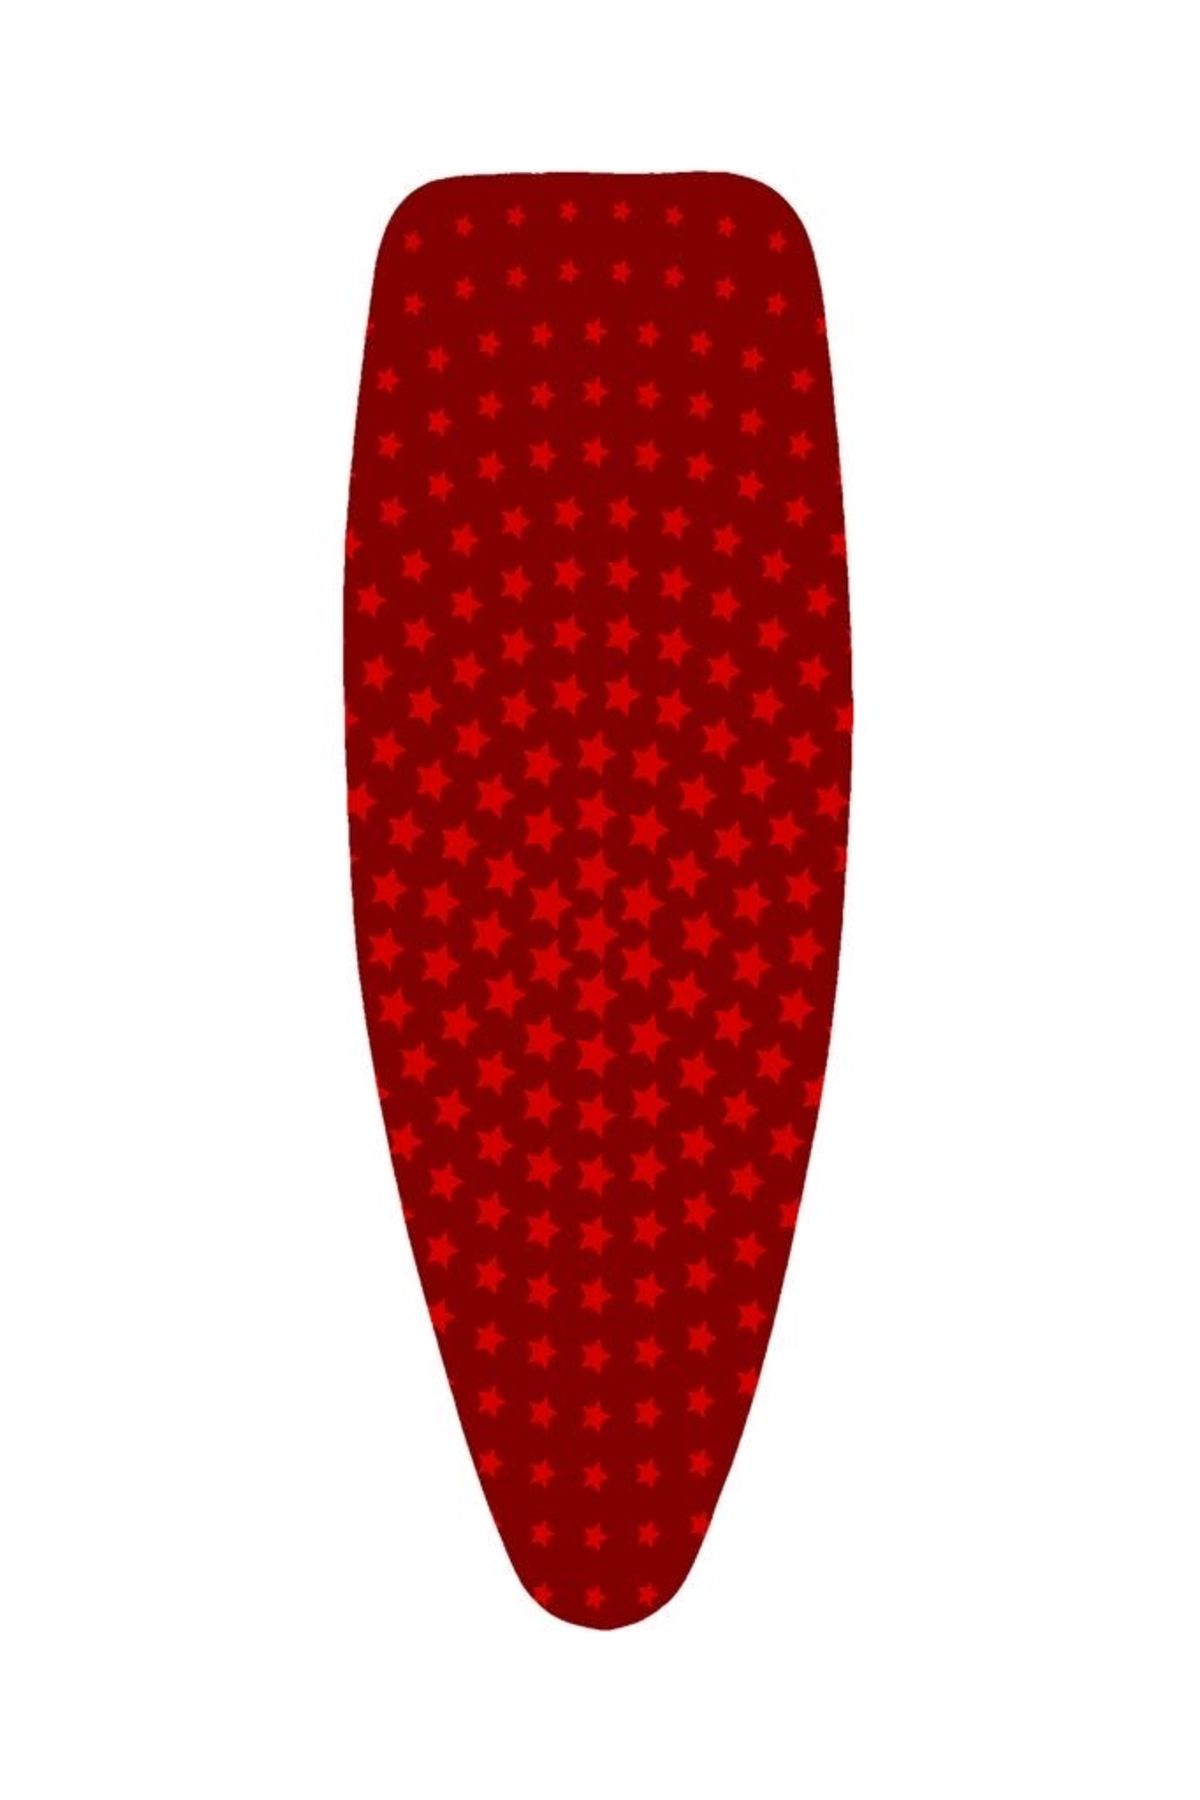 GERCELLA Luxury Red Star Ütü Masası Kılıfı Örtüsü (50X135CM)